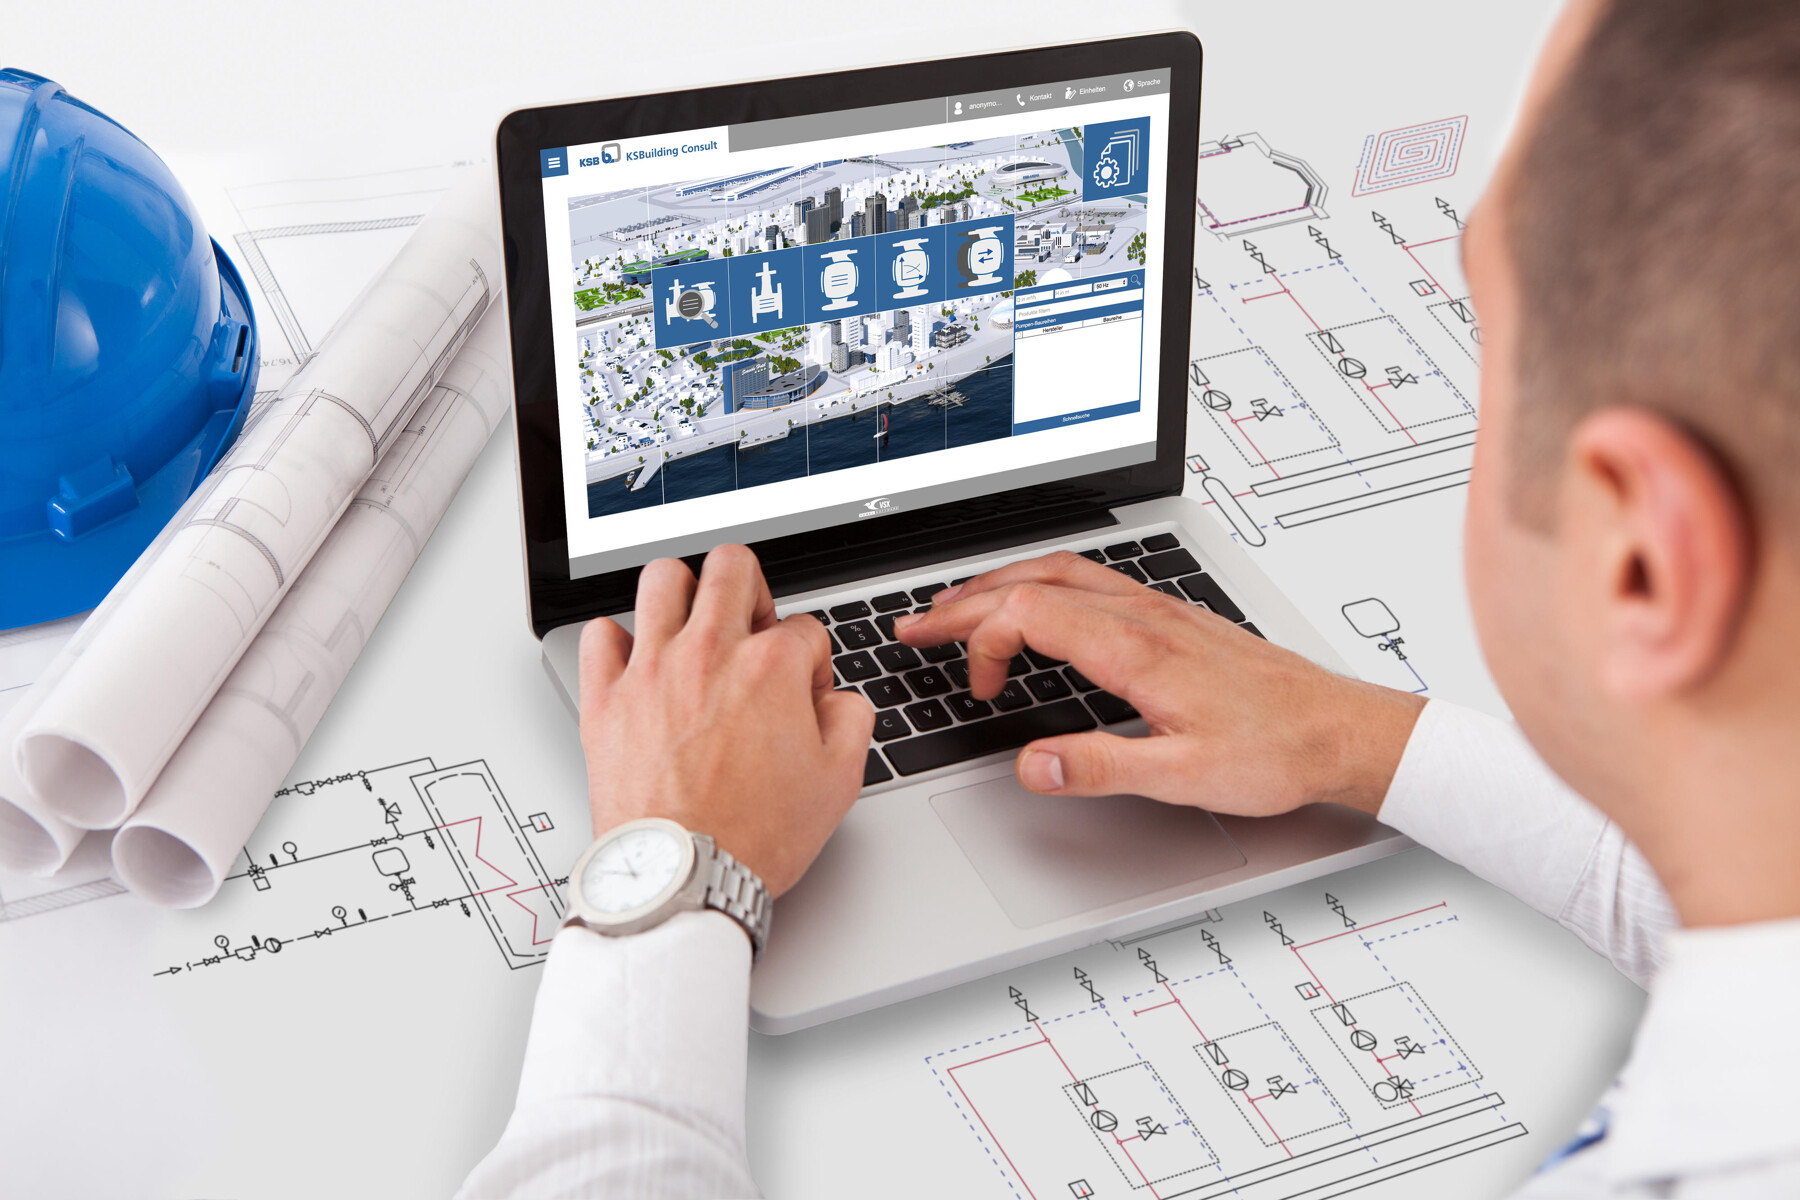 Planer in der Gebäudetechnik über Pläne gebeugt, im Hintergrund Laptop mit KSBuilding Consult auf dem Screen.